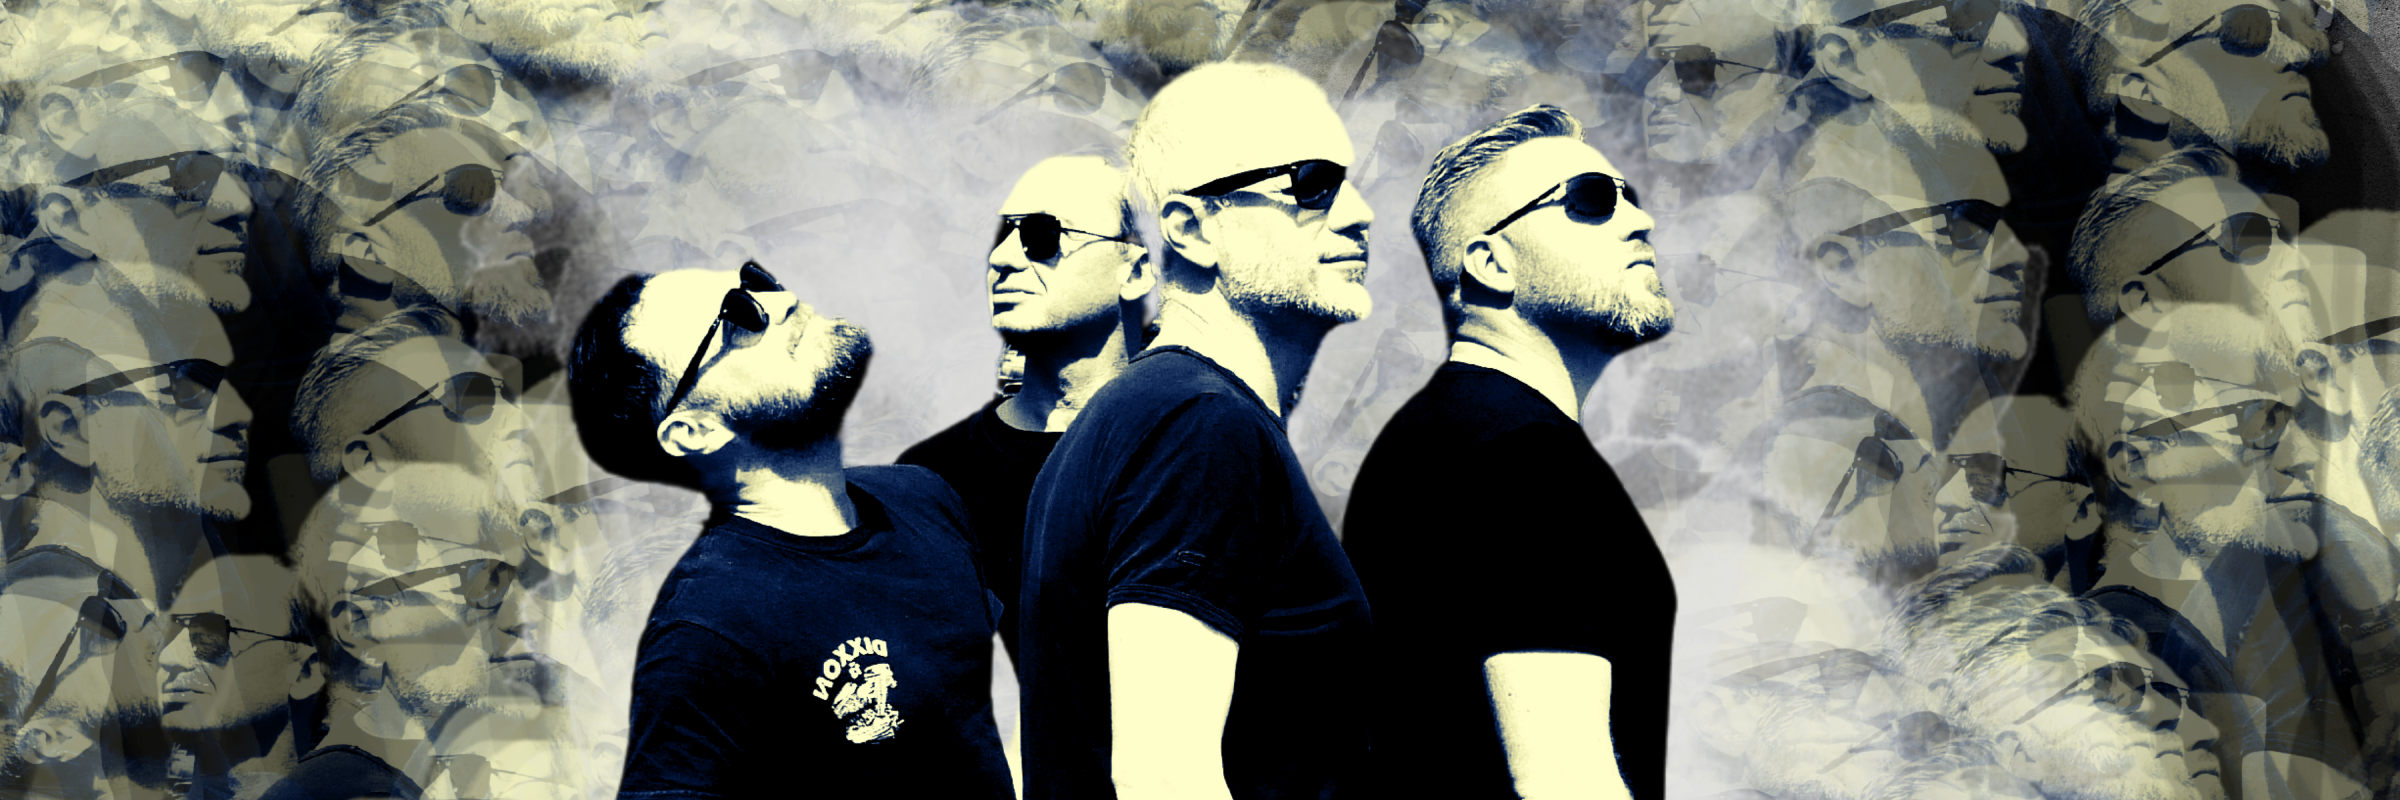 HERNEST, groupe de musique Rock en représentation à Nord - photo de couverture